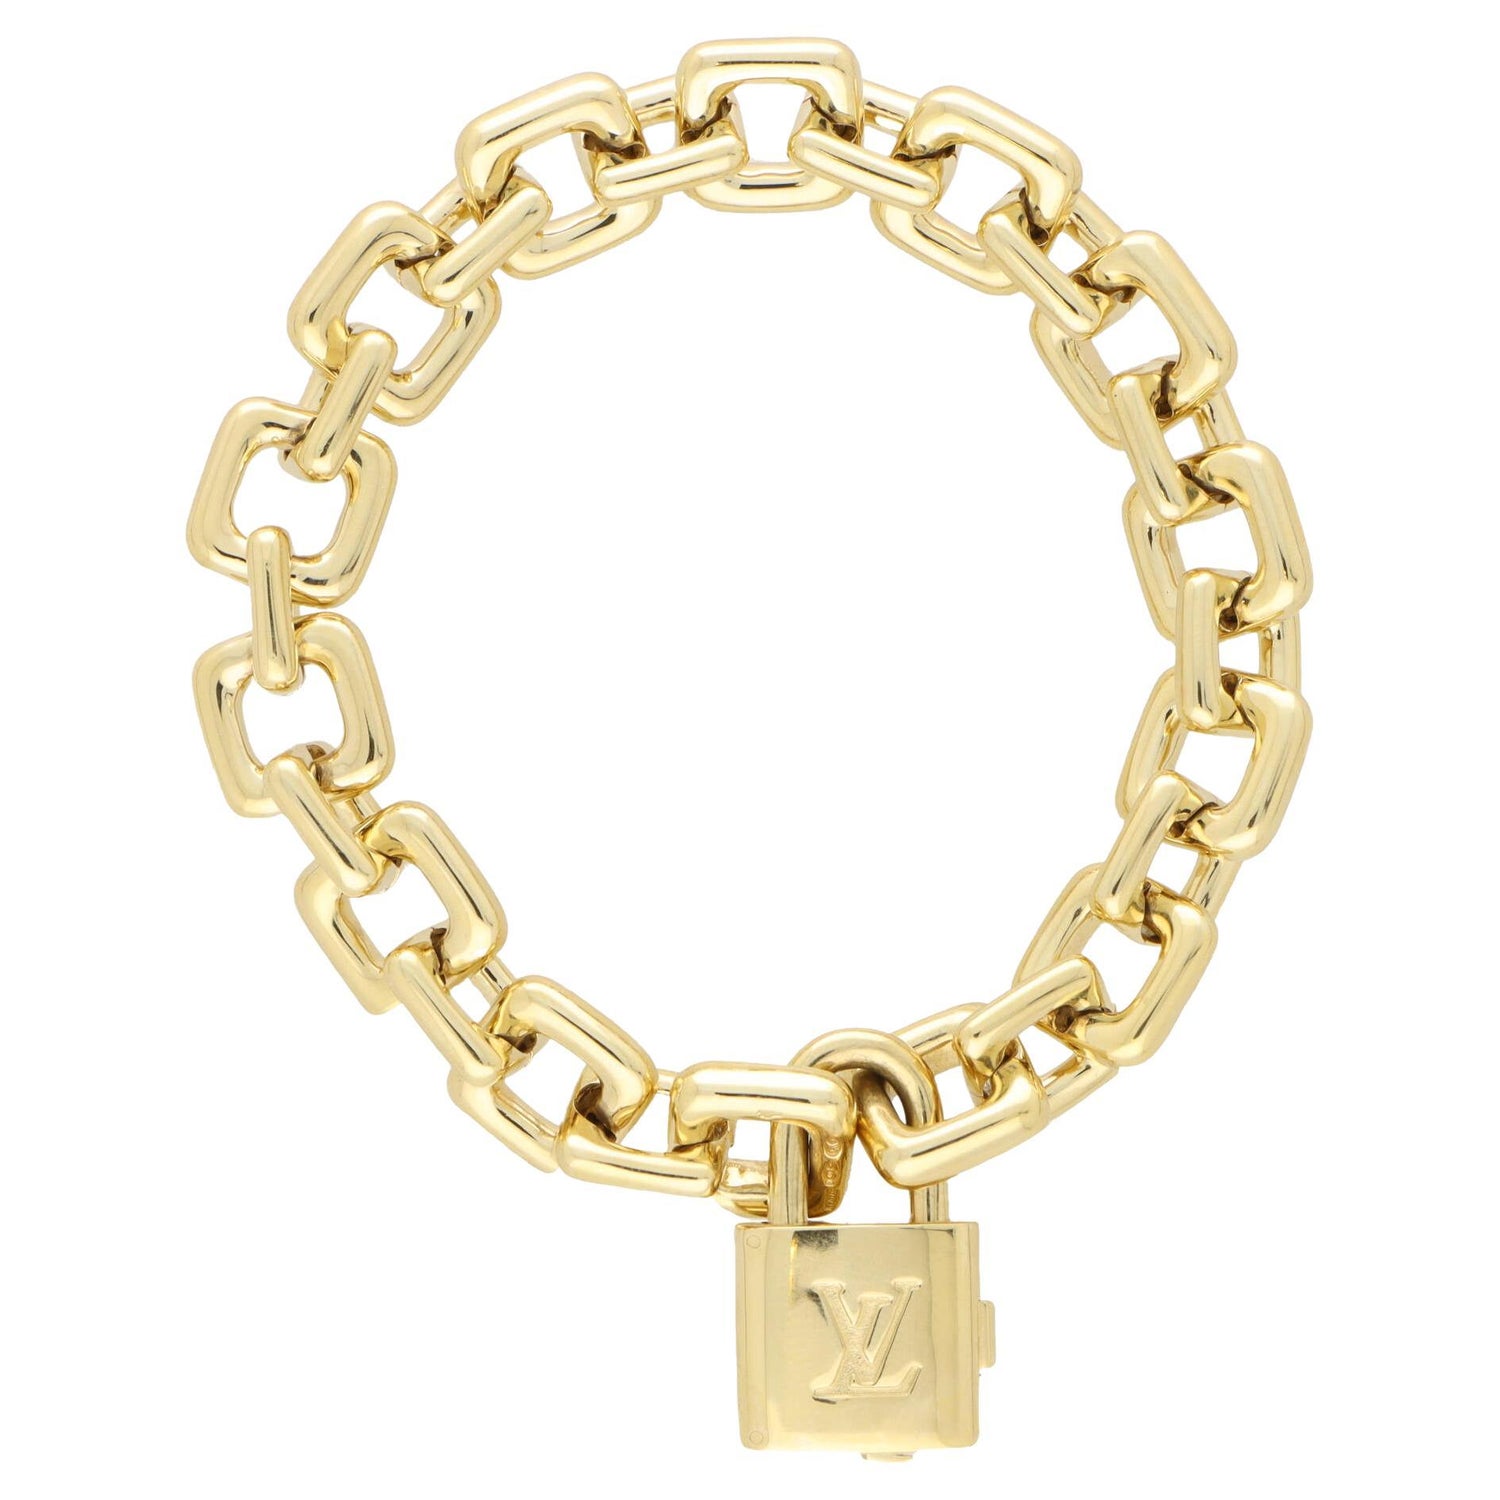 Pretty happy with my collection - bracelets layering / Cartier Love Bracelet  / Hermes H bracelet / Gold Bracelet…